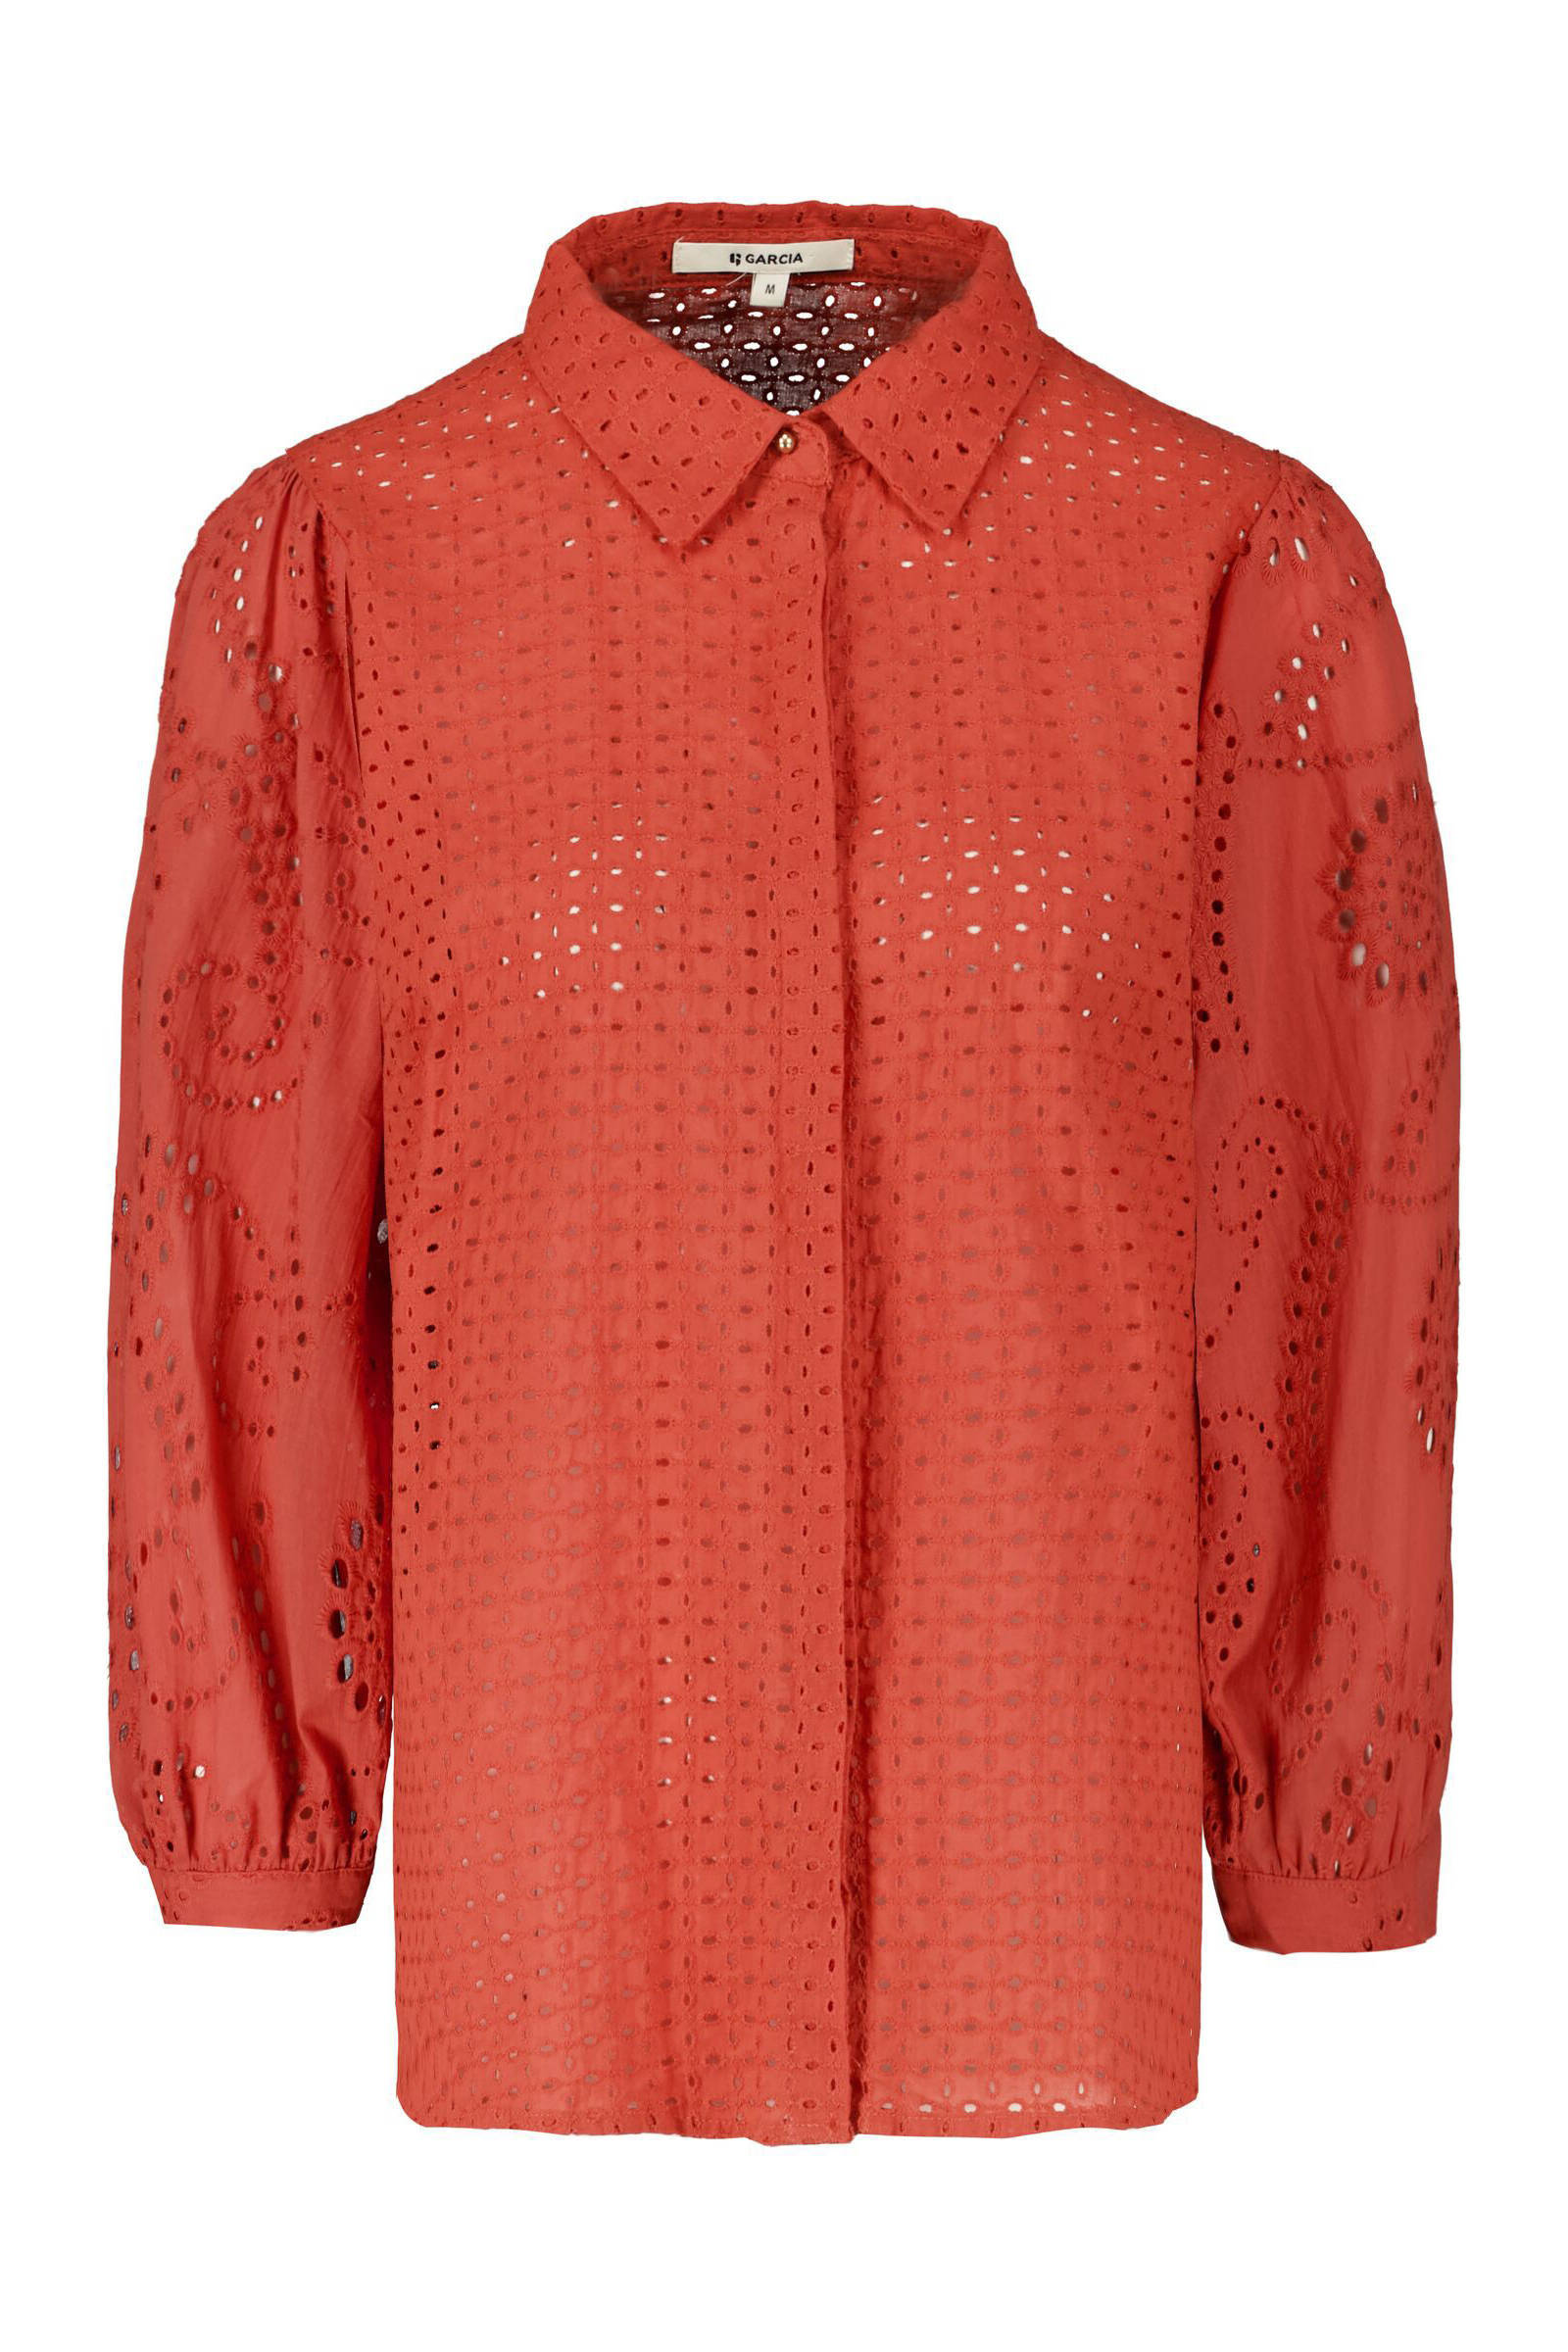 Garcia Klassieke blouse G10033 9871 ginger spice met knoopsluiting online kopen